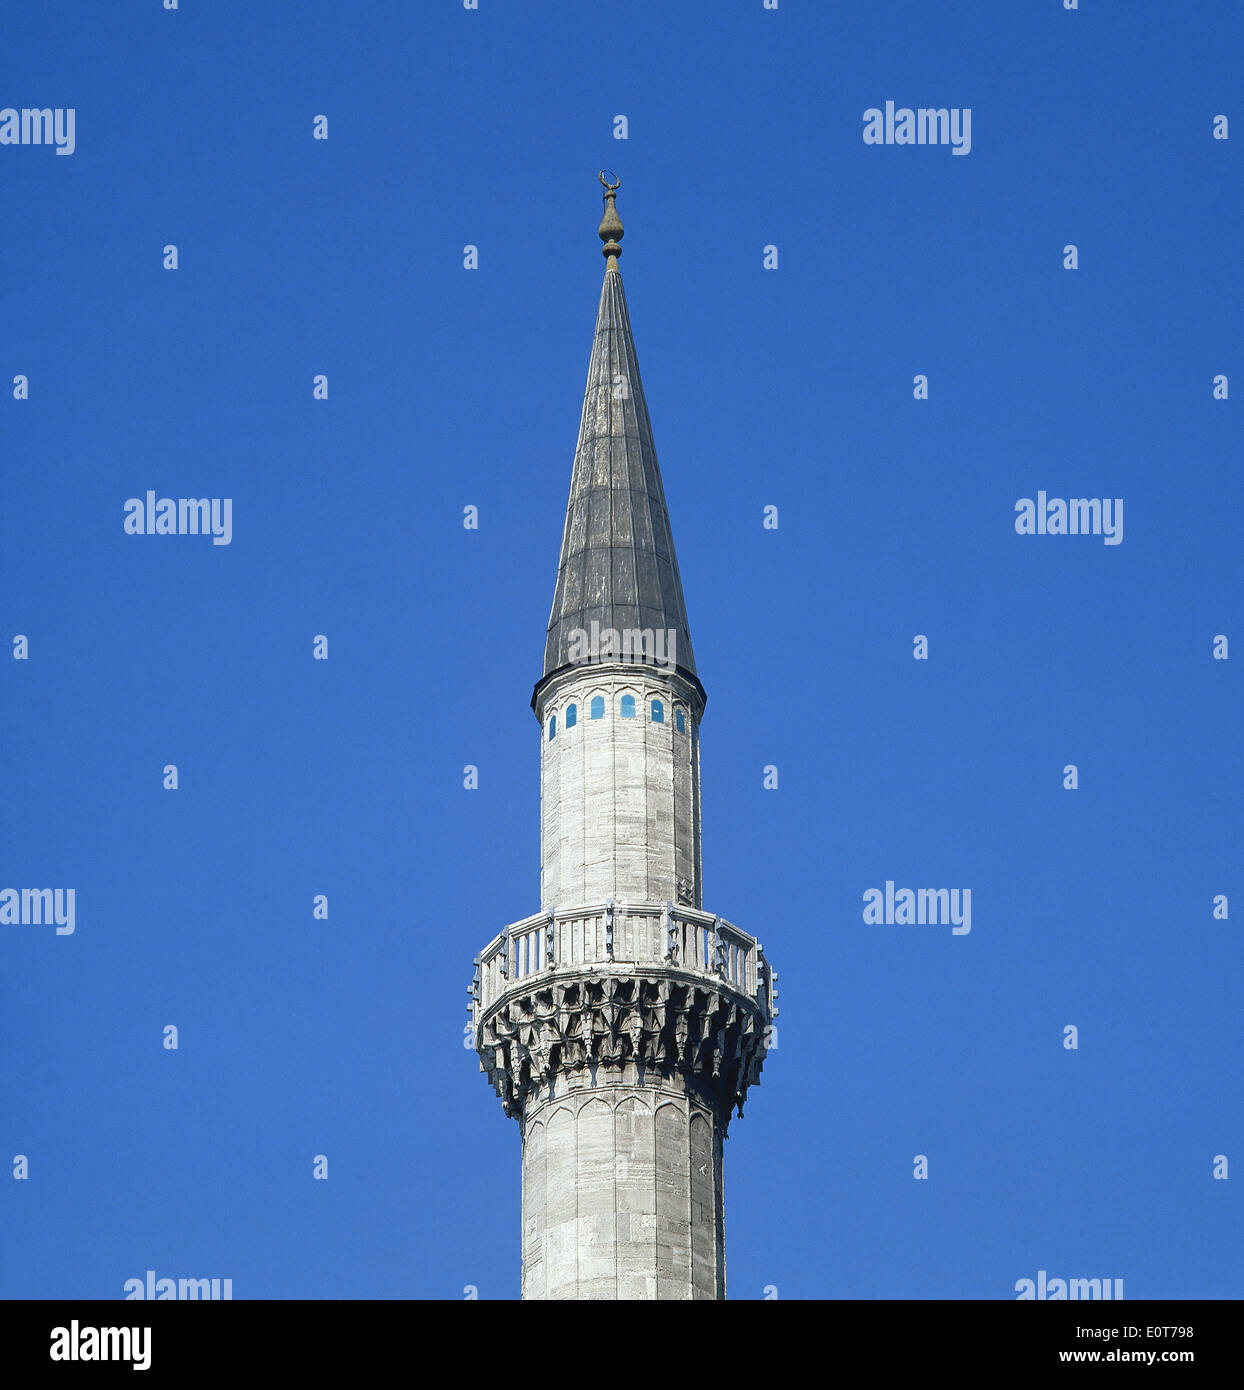 La Turchia. Istanbul. La Moschea di Suleymaniye. Stile ottomano. Architetto, Mimar Sinan. Il XVI secolo. Minarete. Dettaglio. Foto Stock